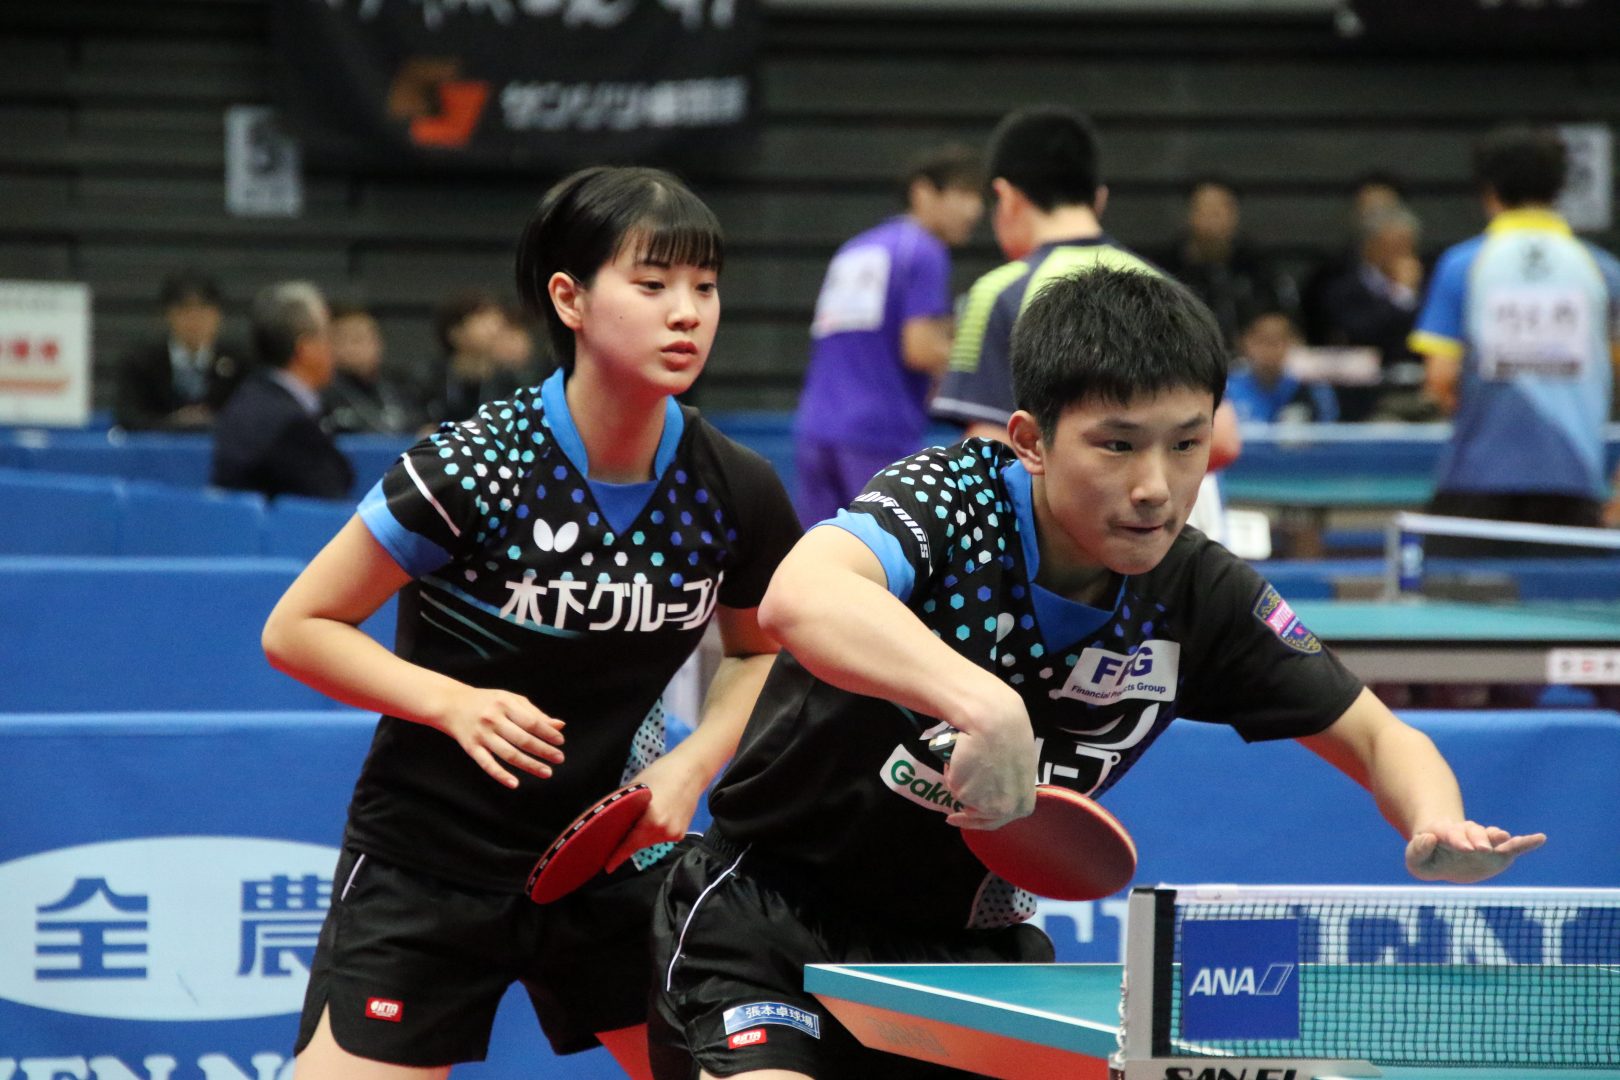 張本/長﨑、4強入り　「連携と個の力を使って勝ちたい」と意気込み＜全日本卓球2020＞